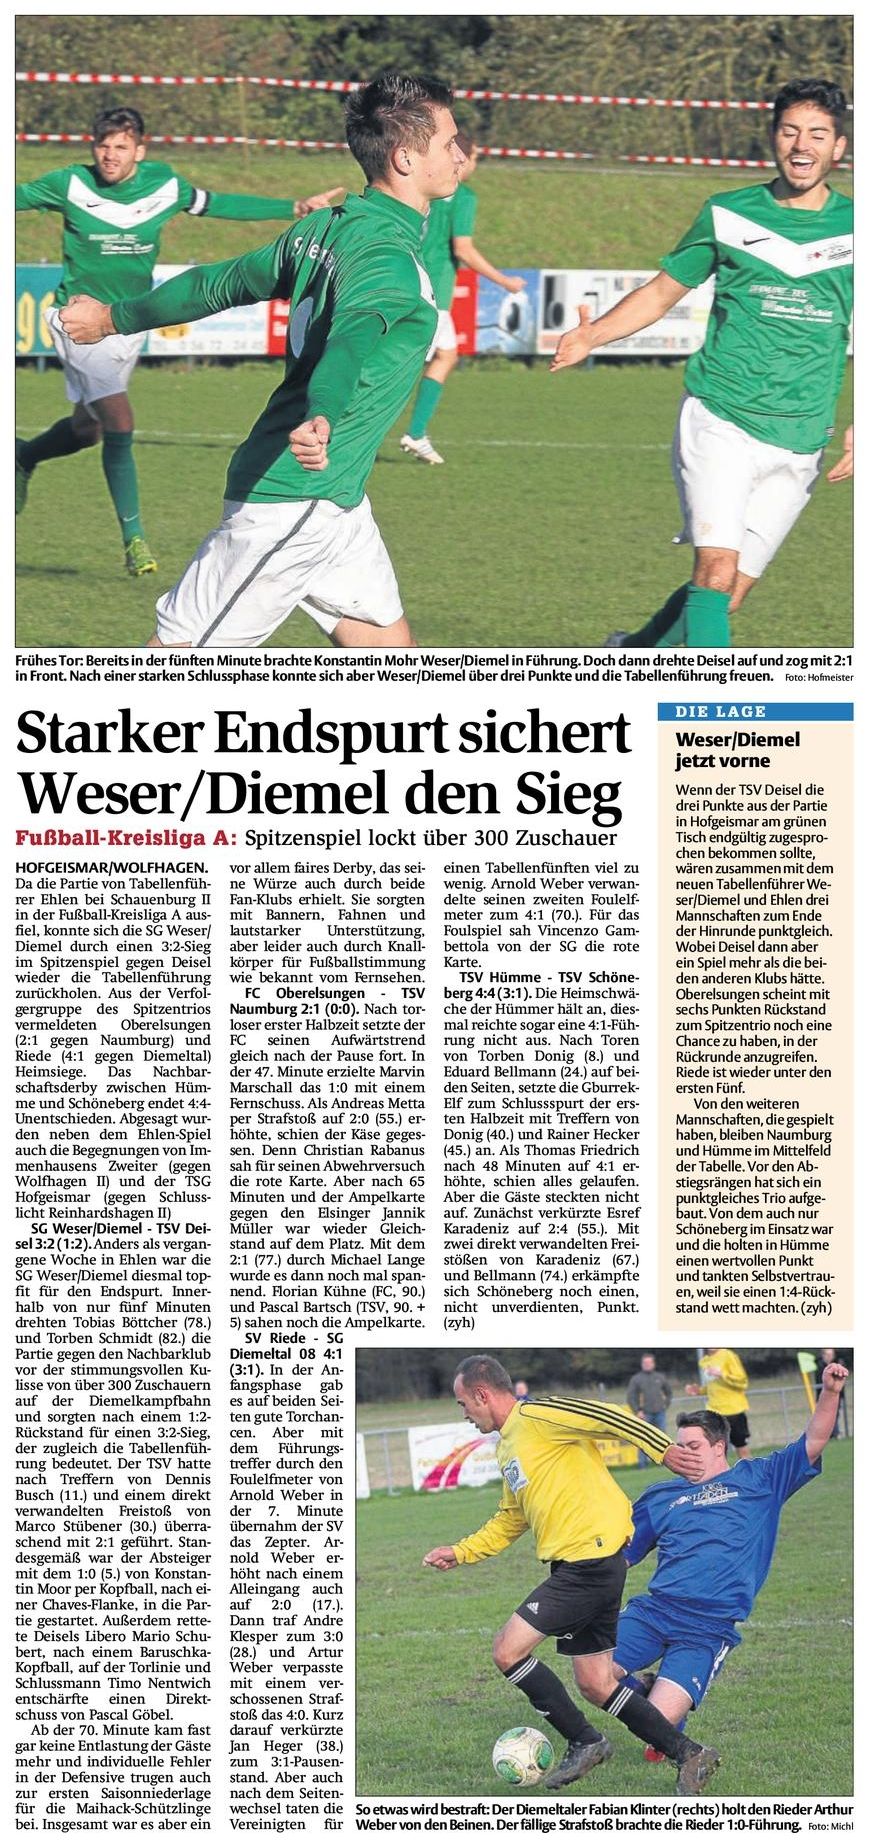 Derby SG Weser Diemel und TSV Deisel